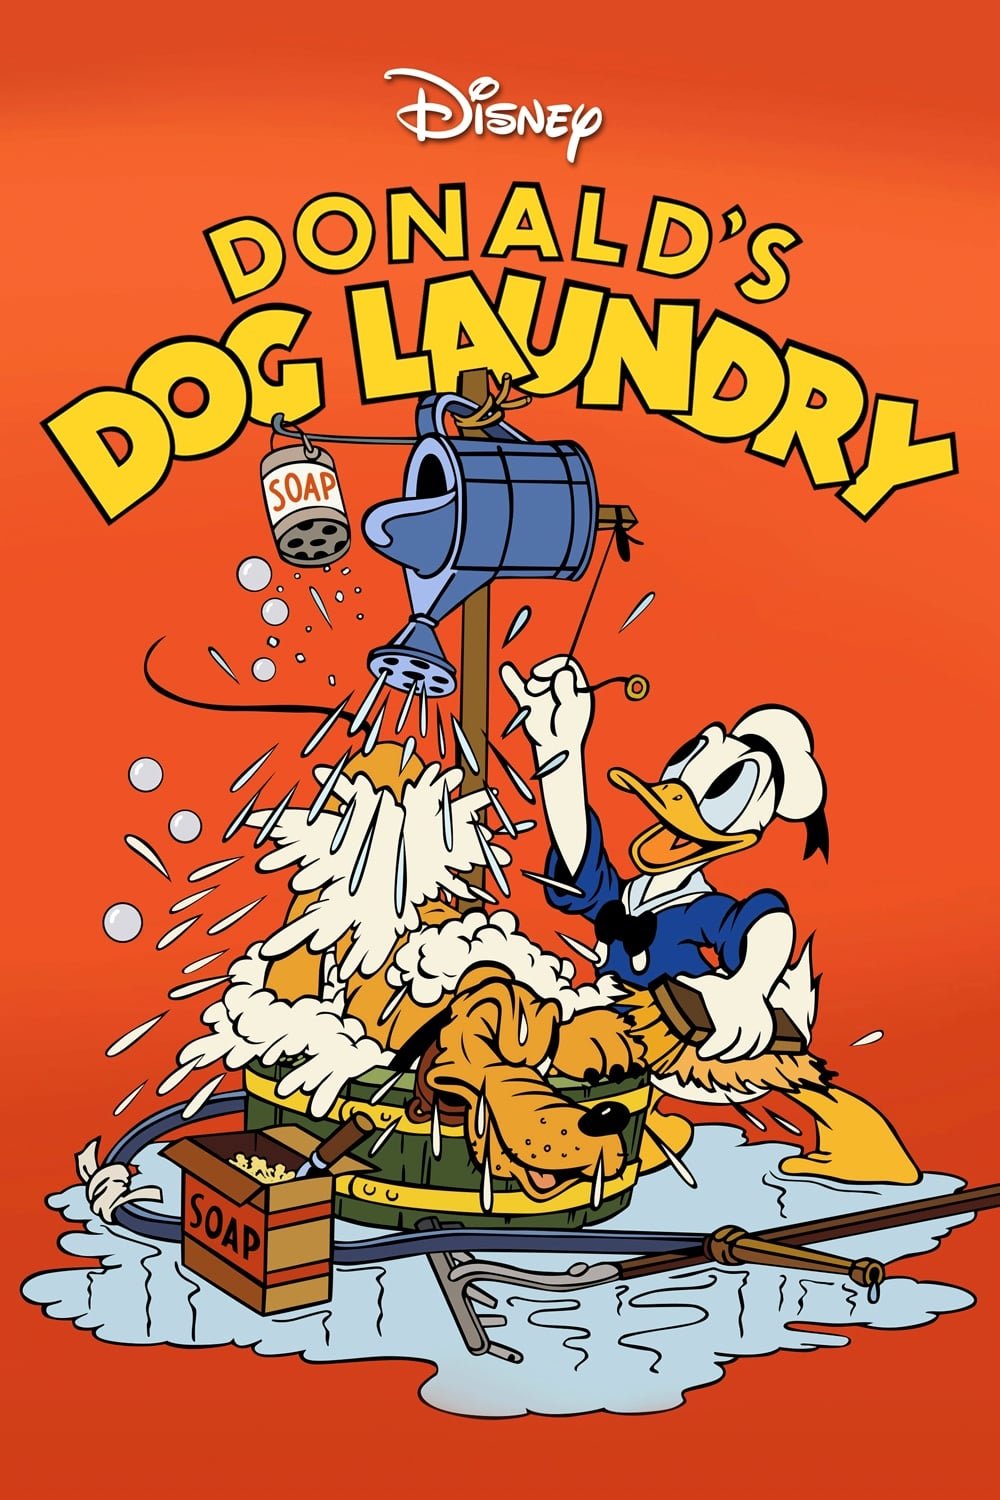 Donald's Dog Laundry (1940)